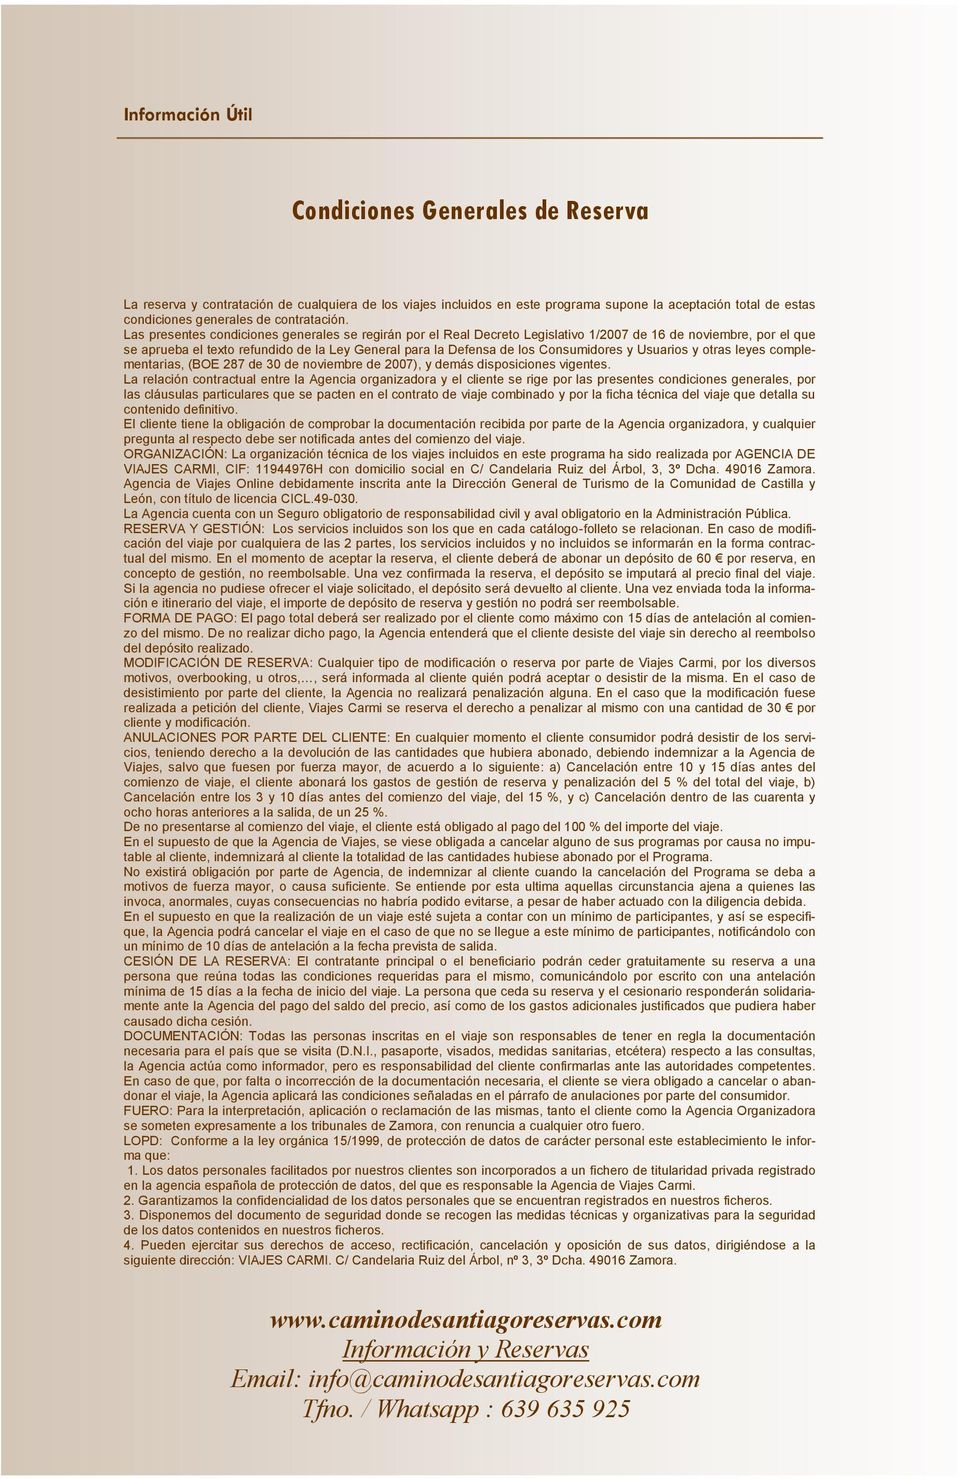 Las presentes condiciones generales se regirán por el Real Decreto Legislativo 1/2007 de 16 de noviembre, por el que se aprueba el texto refundido de la Ley General para la Defensa de los